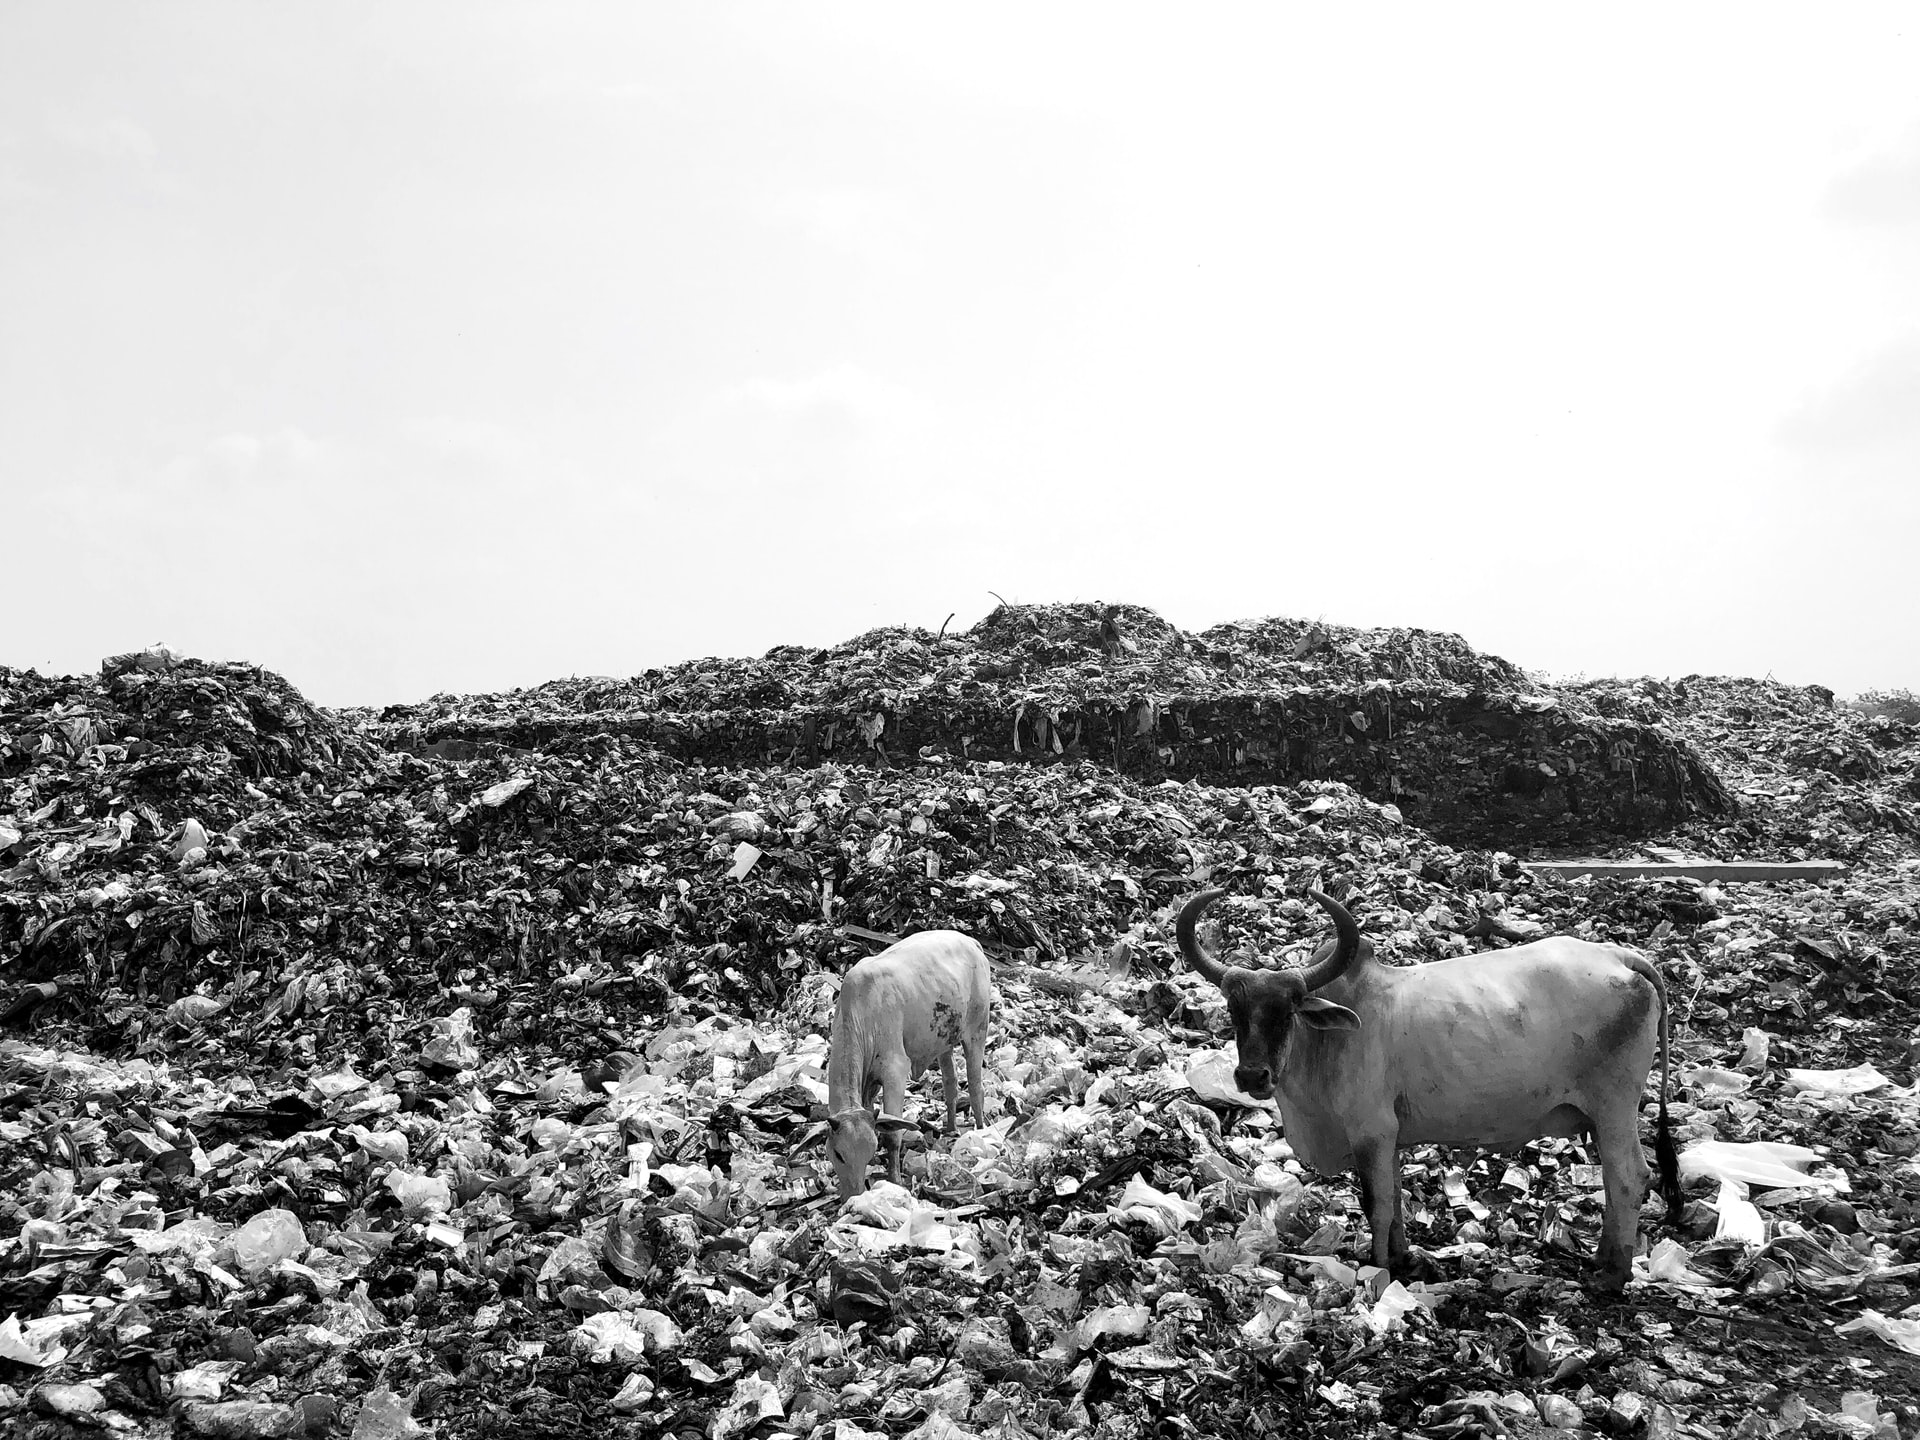 Cows feeding in a garbage dump